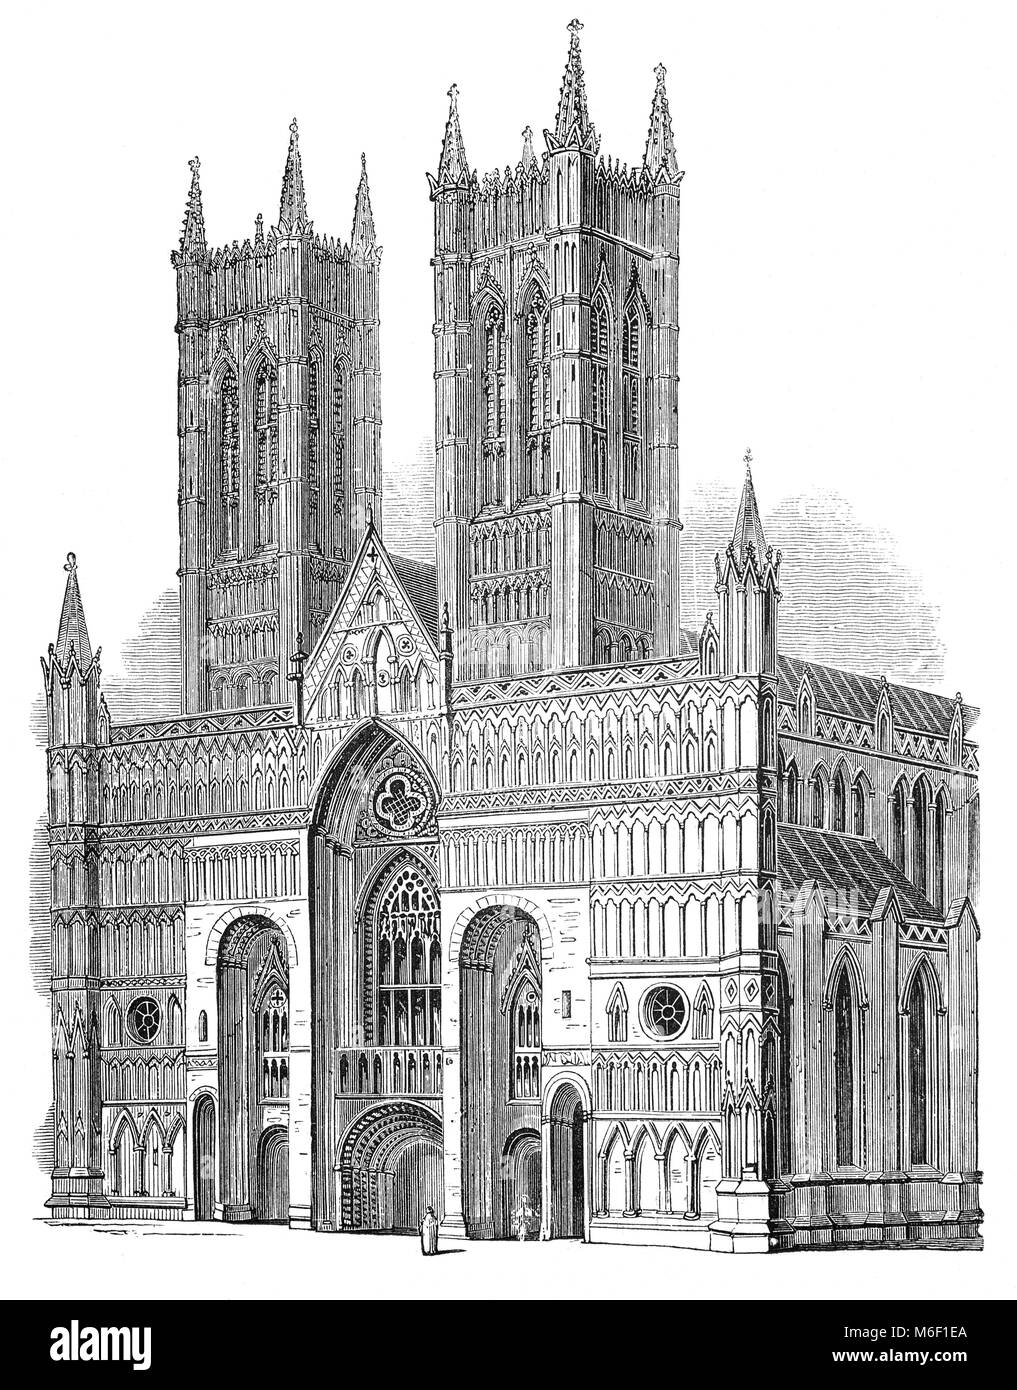 La construction de la cathédrale de Lincoln ou l'église cathédrale de la Sainte Vierge Marie de Lincoln de Lincoln, en Angleterre, a commencé en 1088 et continué en plusieurs phases tout au long de la période médiévale. La flèche centrale s'est effondrée en 1549 et ne fut pas reconstruit. La cathédrale gothique est hautement considéré par les spécialistes de l'architecture ; l'éminent écrivain victorien John Ruskin a déclaré : "J'ai toujours eu lieu... que la cathédrale de Lincoln est out et que les plus précieux morceau d'architecture dans les îles Britanniques et en gros d'une valeur de deux autres cathédrales que nous avons." Banque D'Images